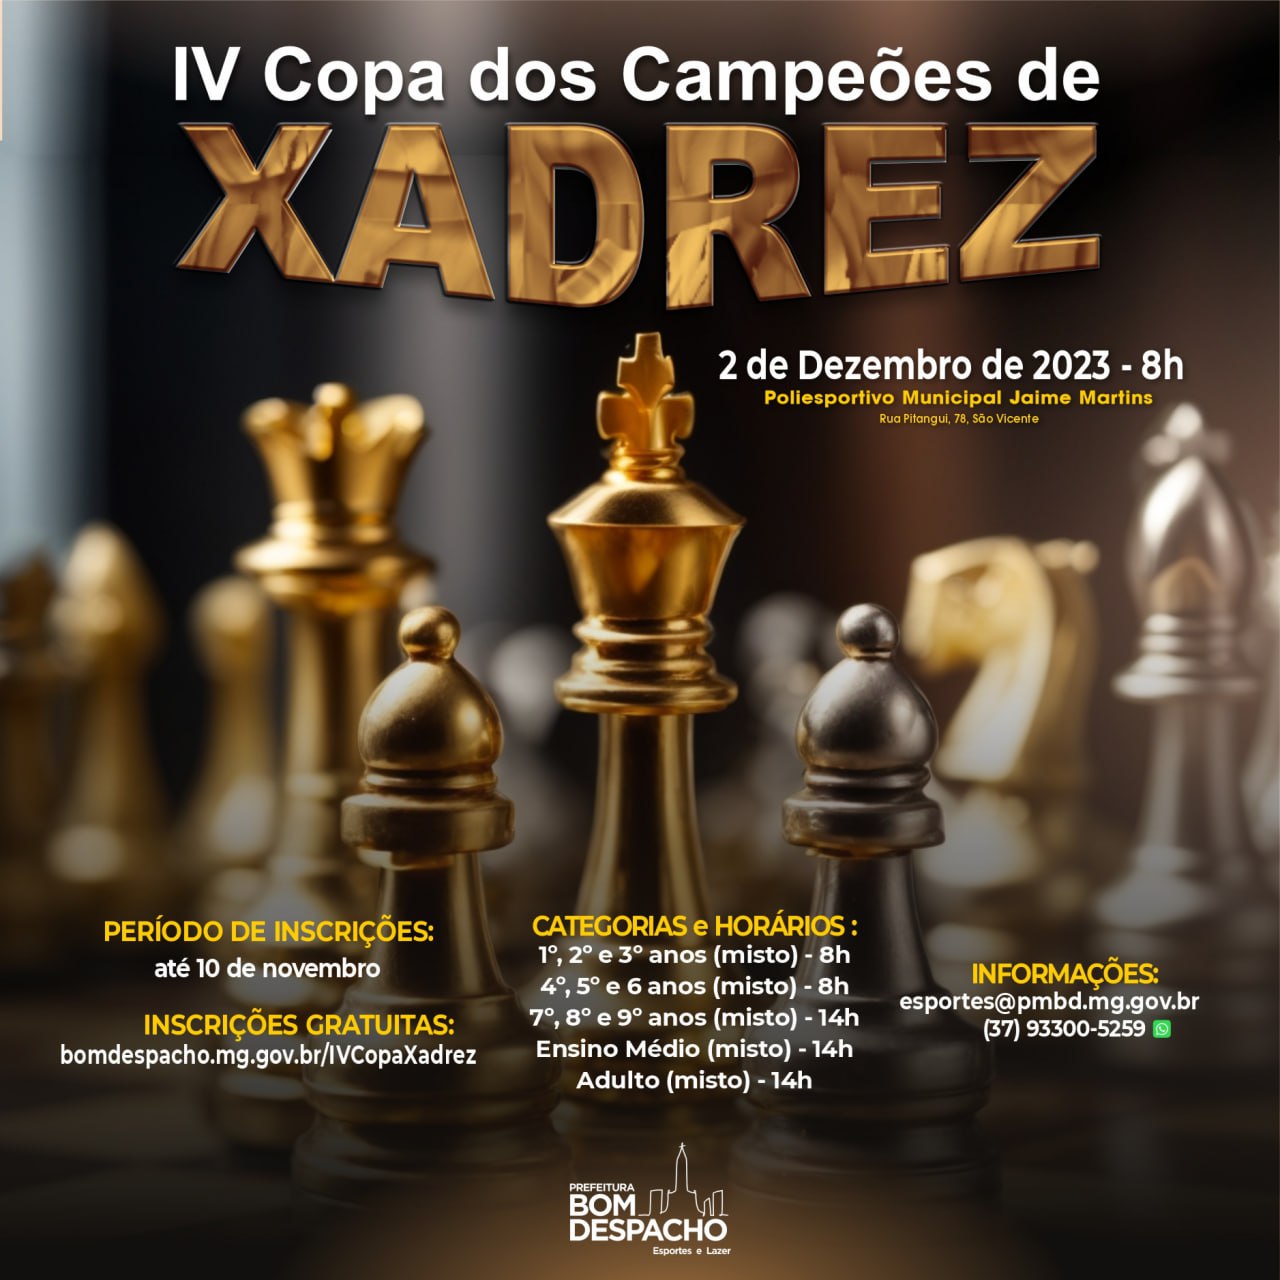 Curso gratuito de Xadrez - Avançado grátis - Curso online de Xadrez -  Avançado com certificado